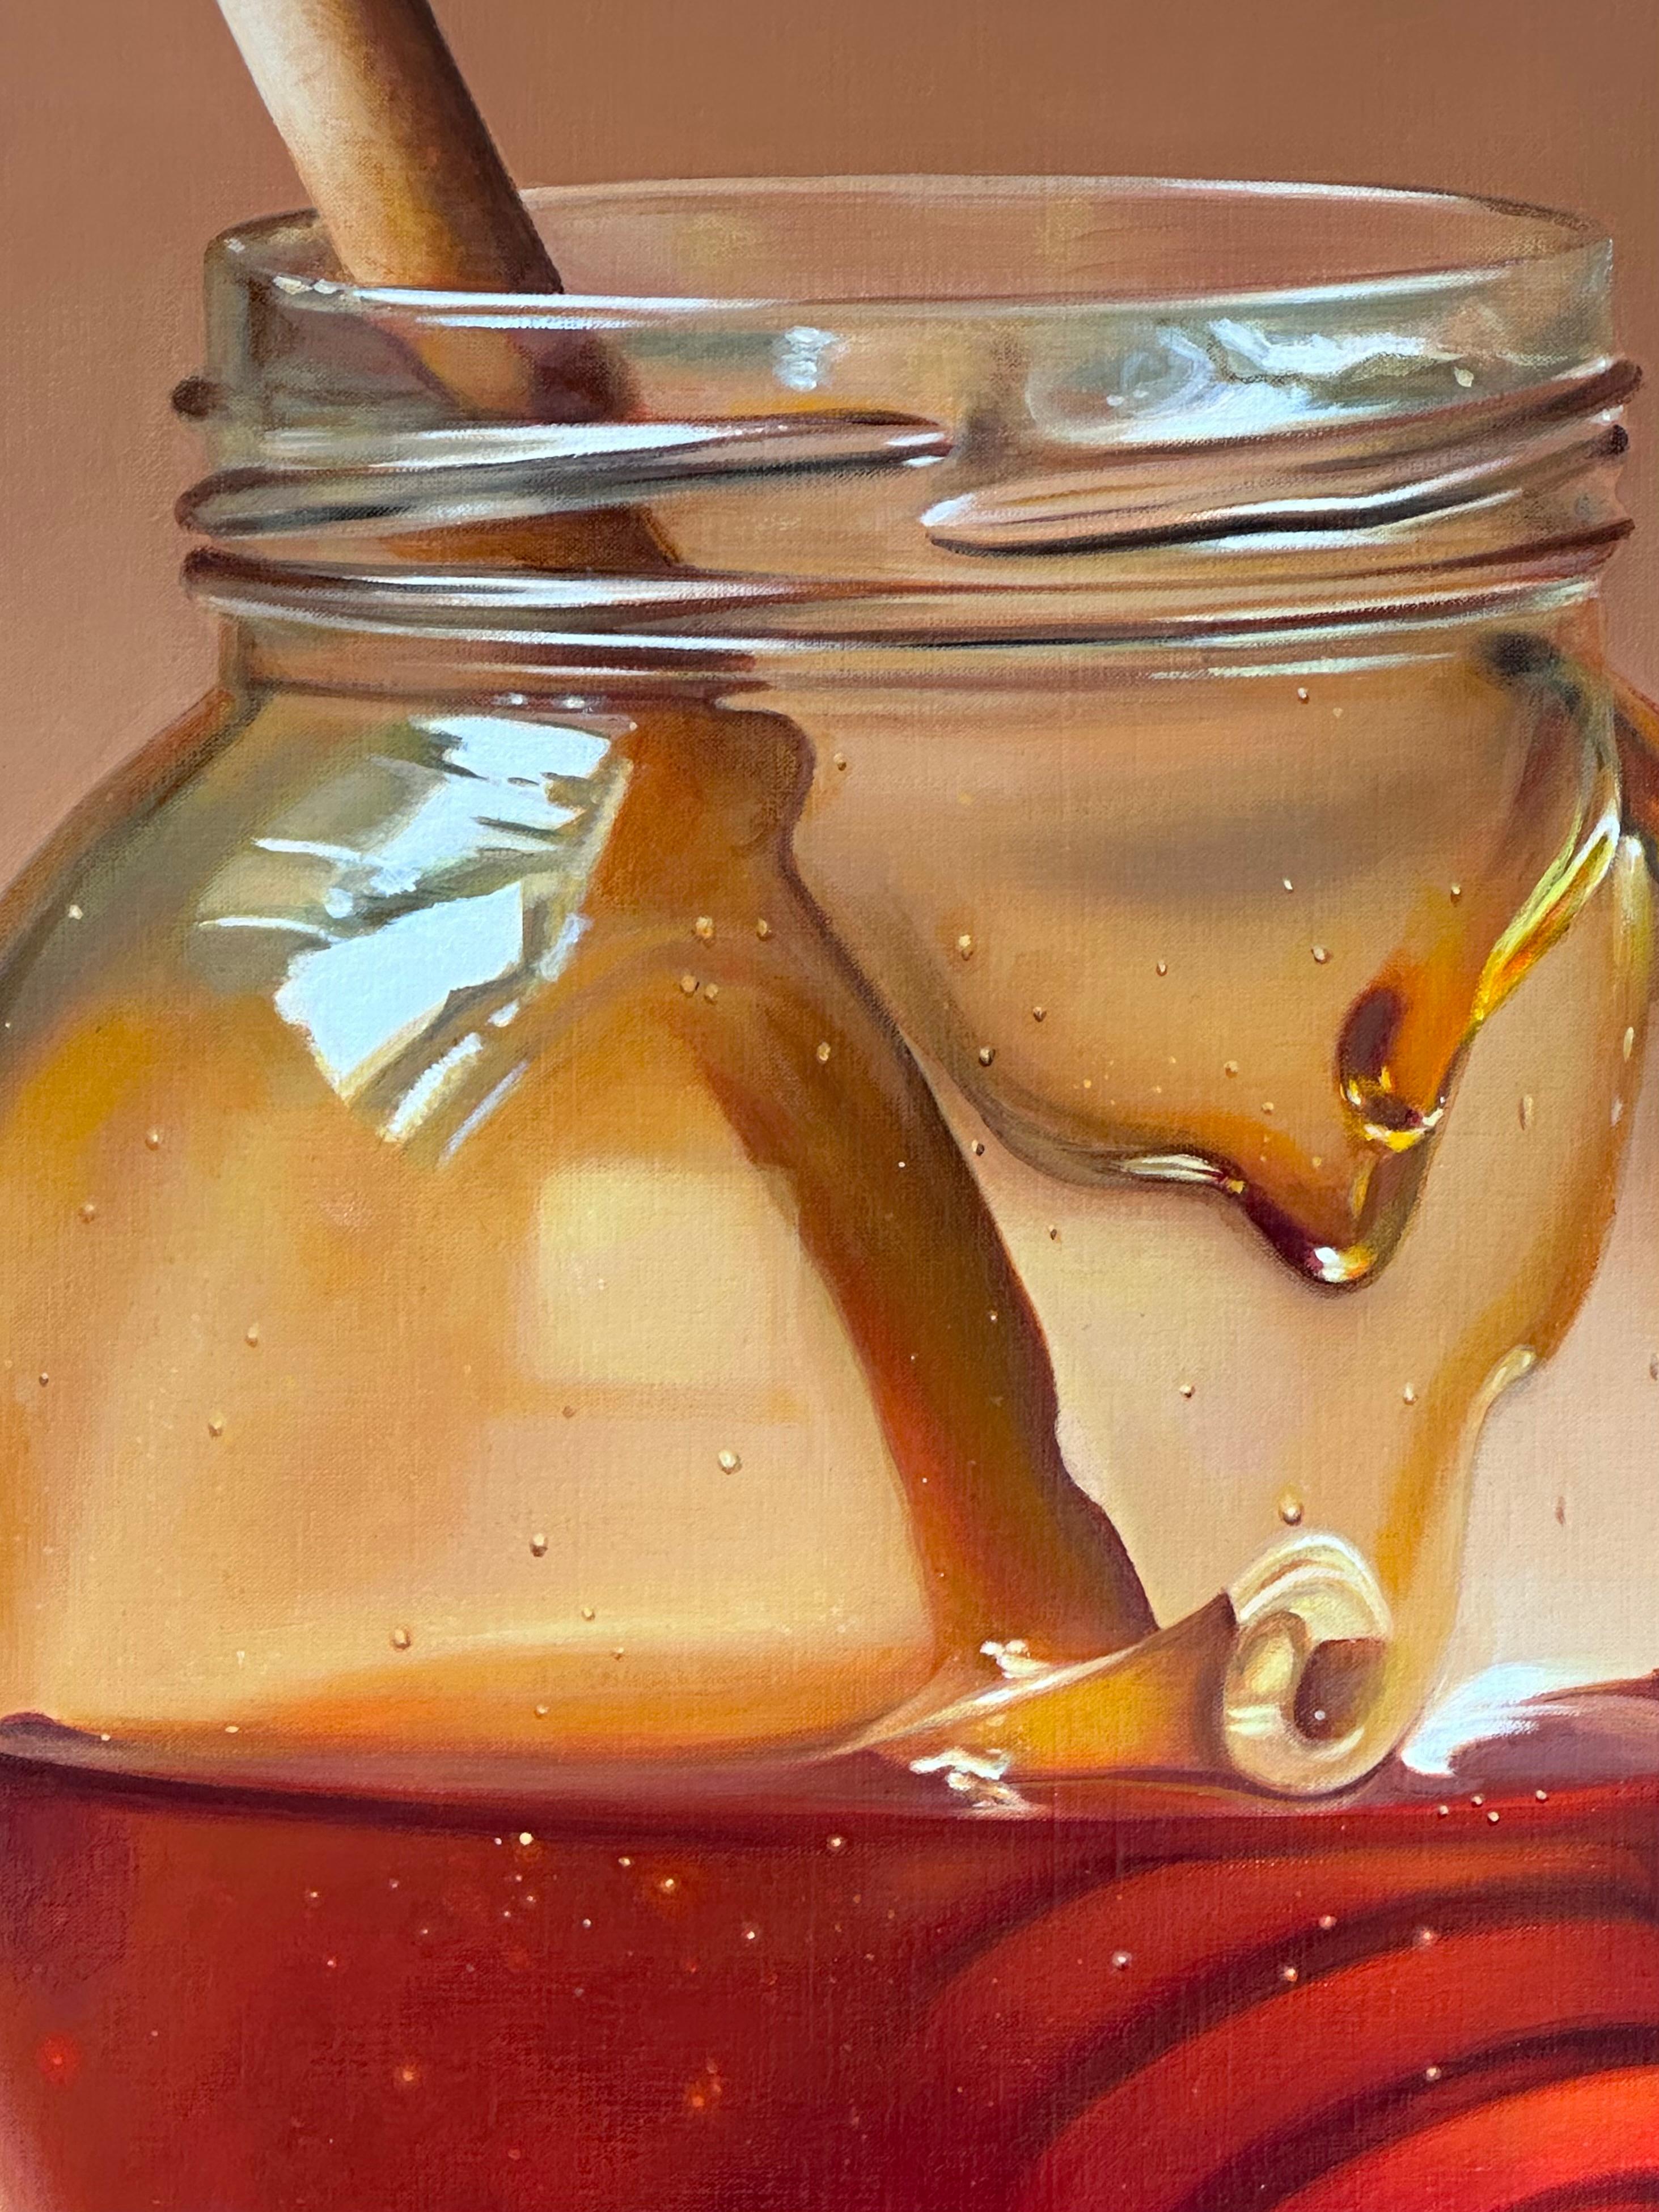 Heidi von Faber
Cuillère à miel dans un pot
Acrylique sur lin
100 x 100 cm ( encadré/ inclus dans le prix 105 x 105 cm)

L'artiste néerlandaise Heidi Von Faber vit et travaille à La Haye. 

Les natures mortes qu'elle peint sont modernes mais